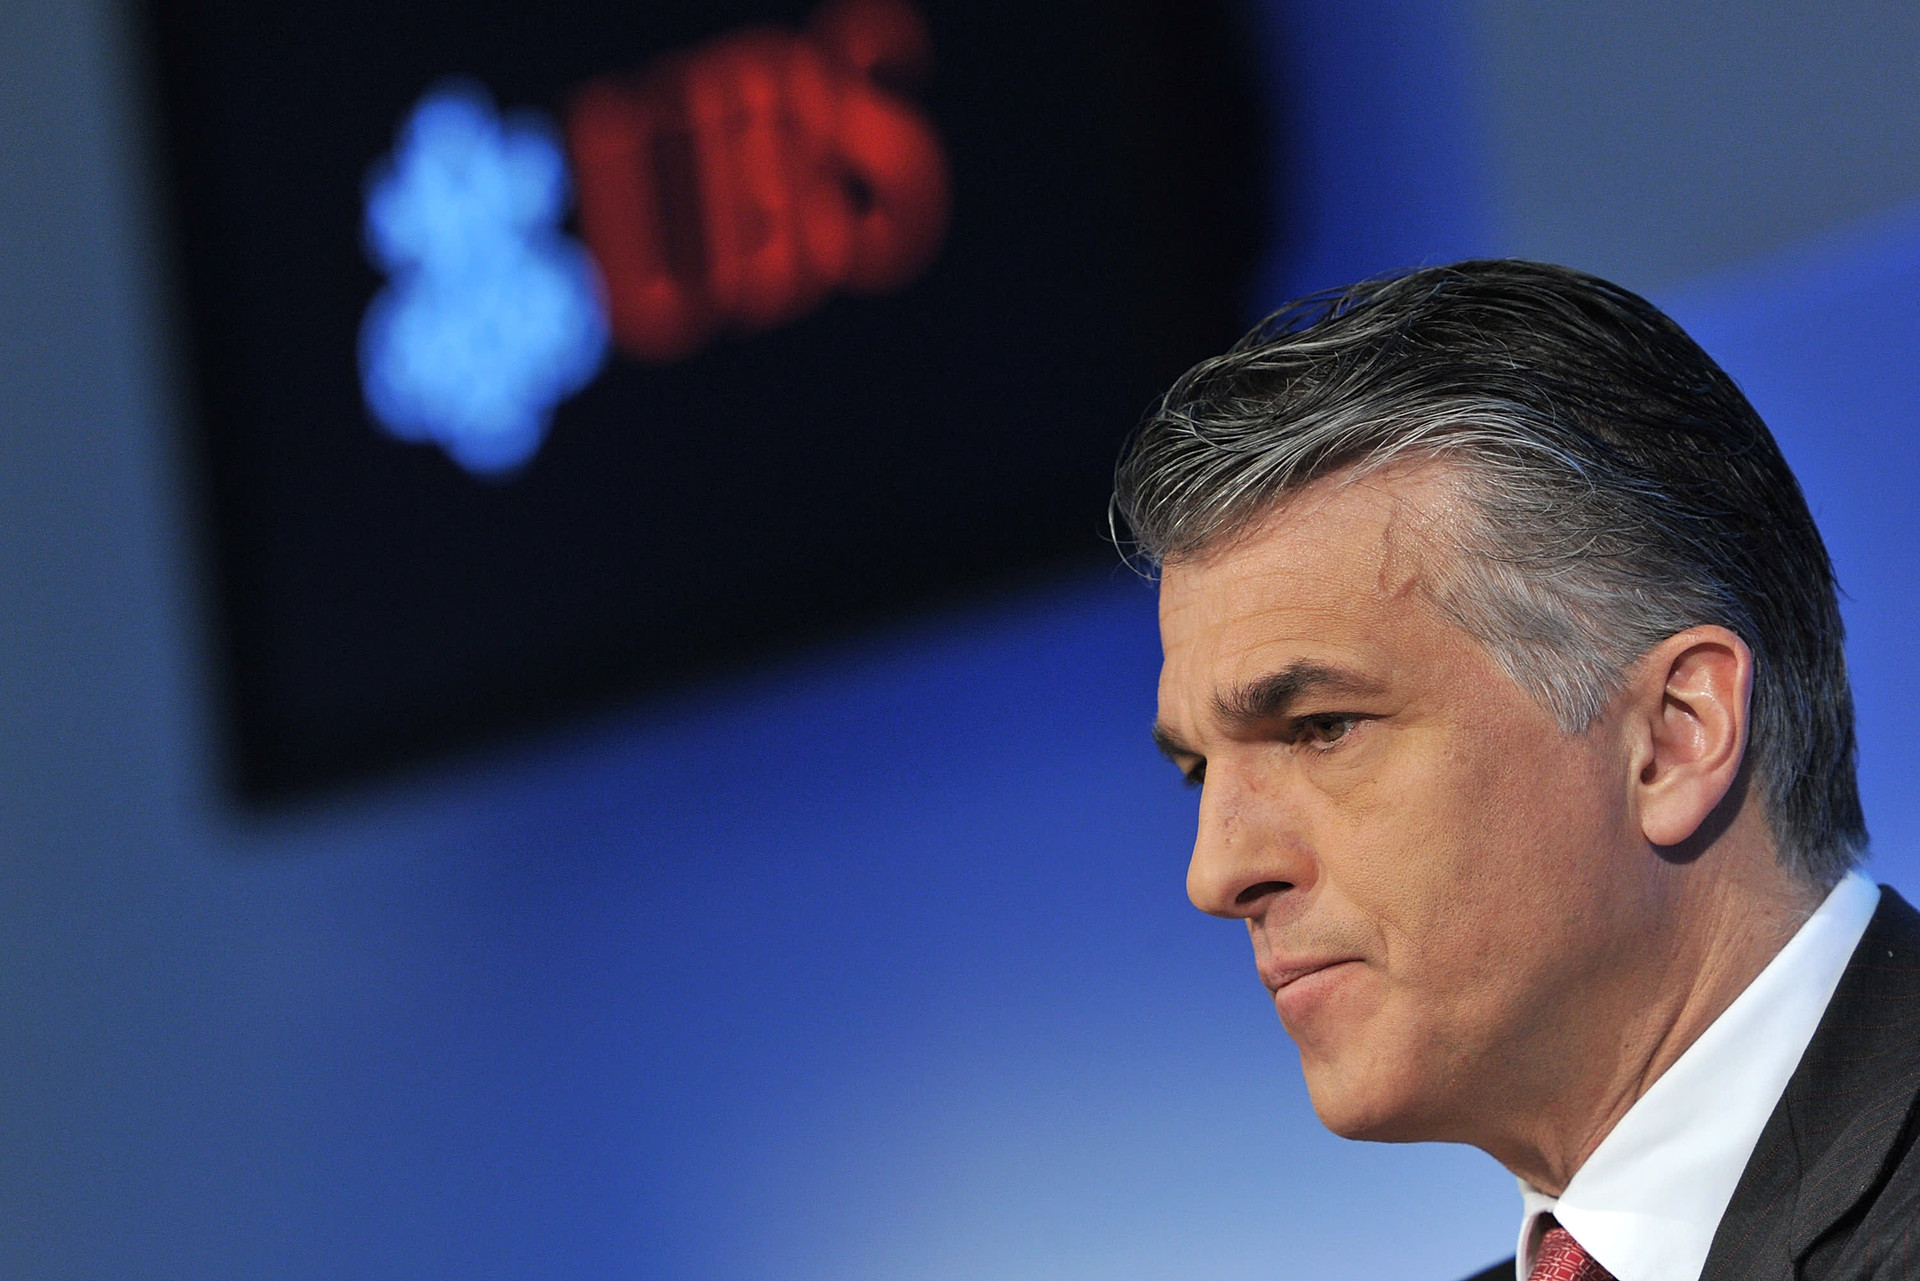 Nóng: CEO UBS từ chức, người kế nhiệm lộ diện - Ảnh 1.